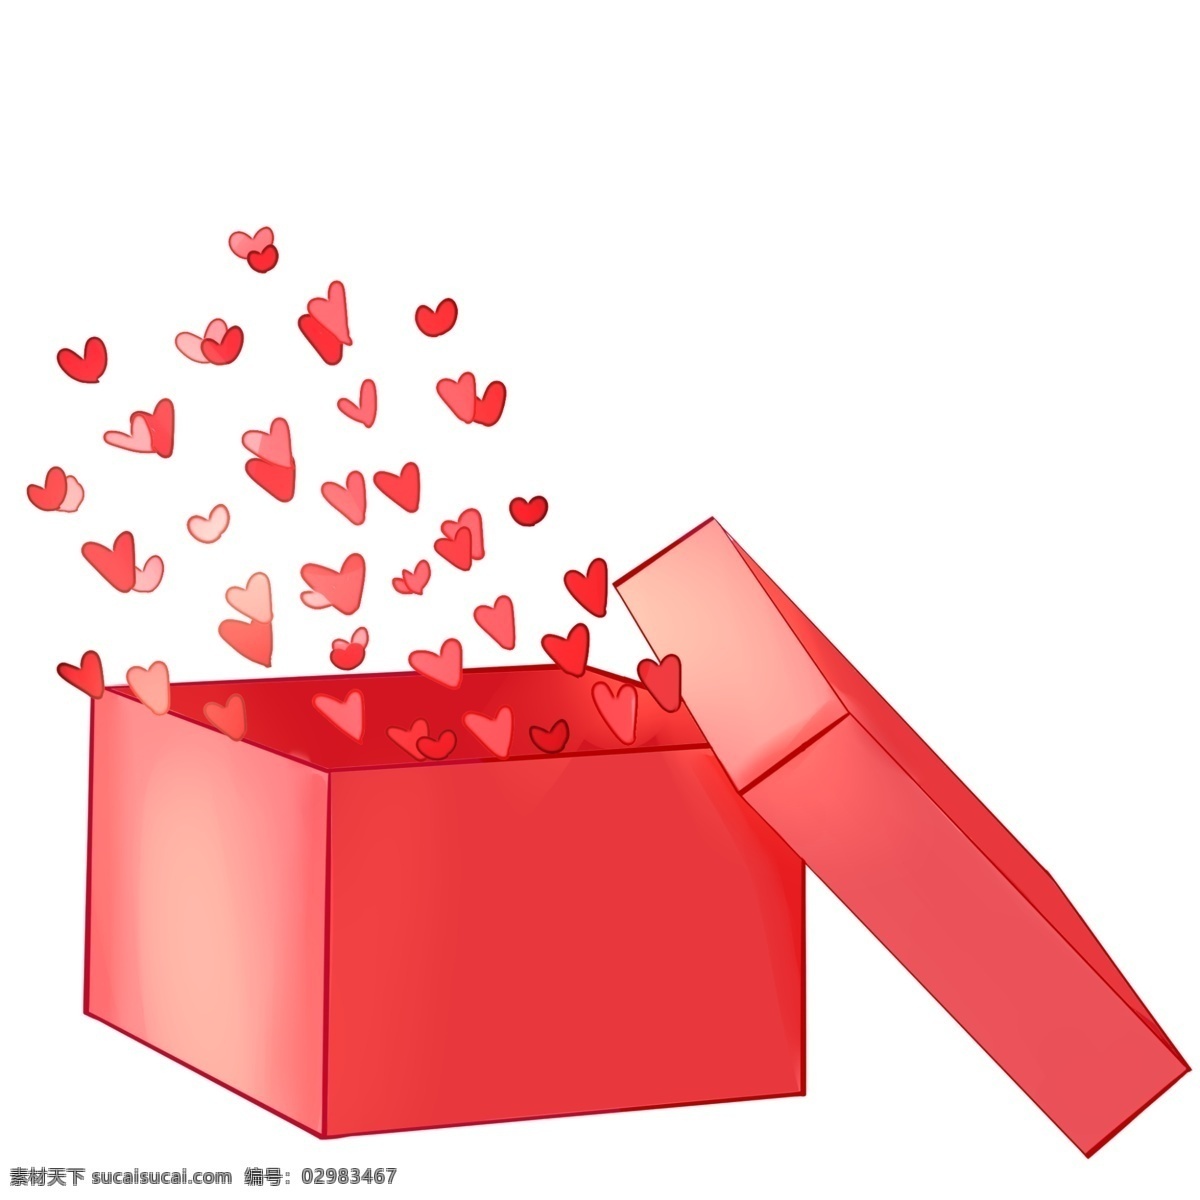 手绘 红色 爱心 包装盒 插画 红色包装盒 礼品盒 红色爱心盒子 卡通 爱情 创意礼品盒